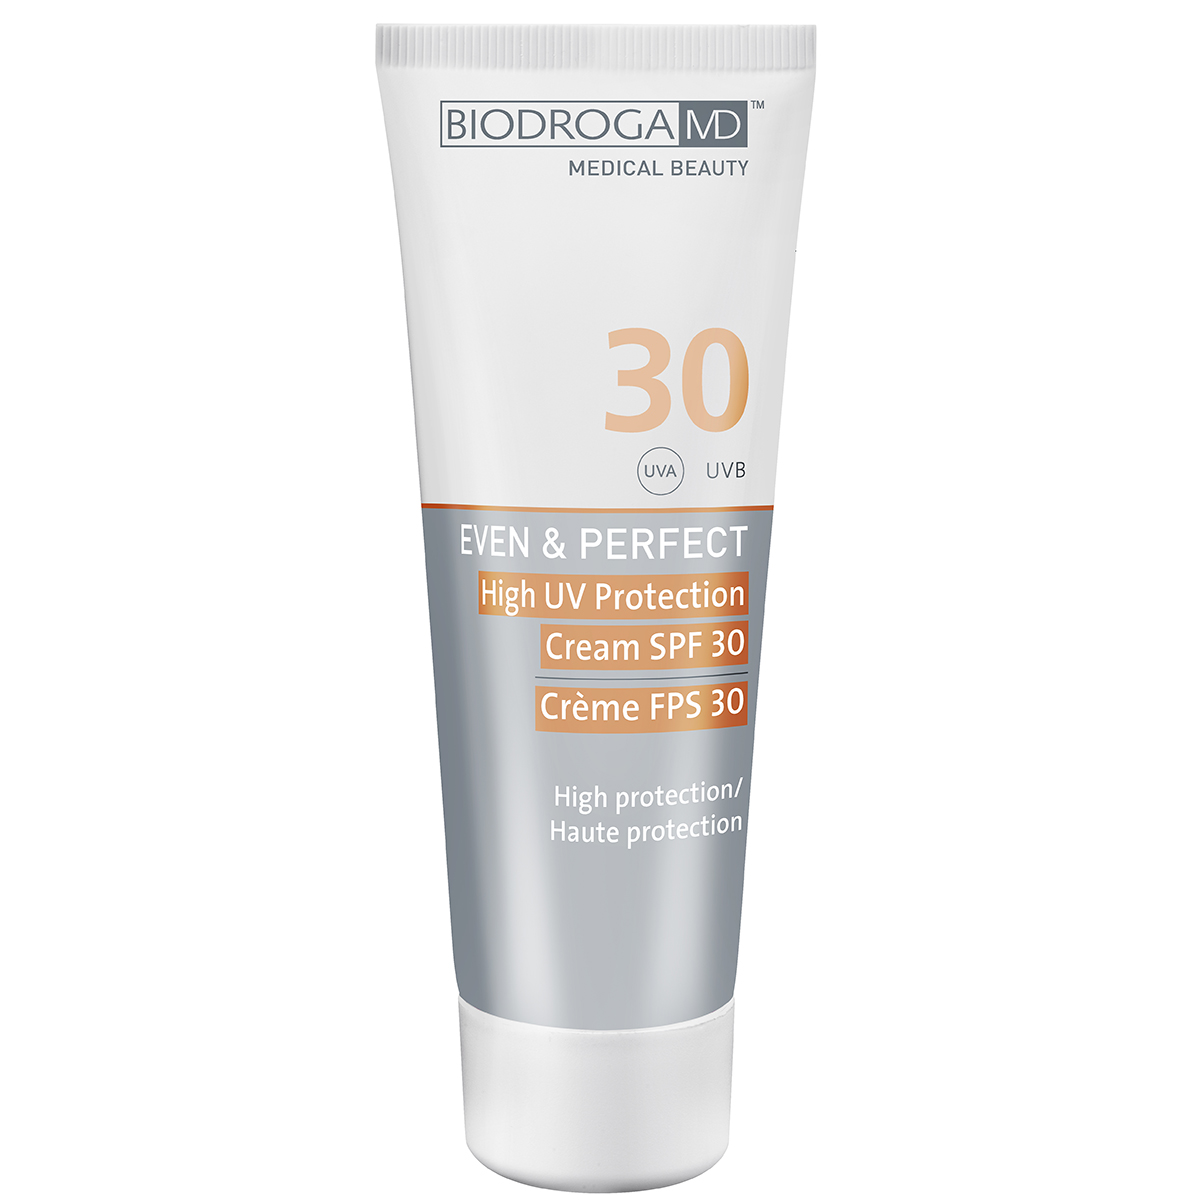 Biodroga MD Even & Perfect UV Protection Cream SPF 30